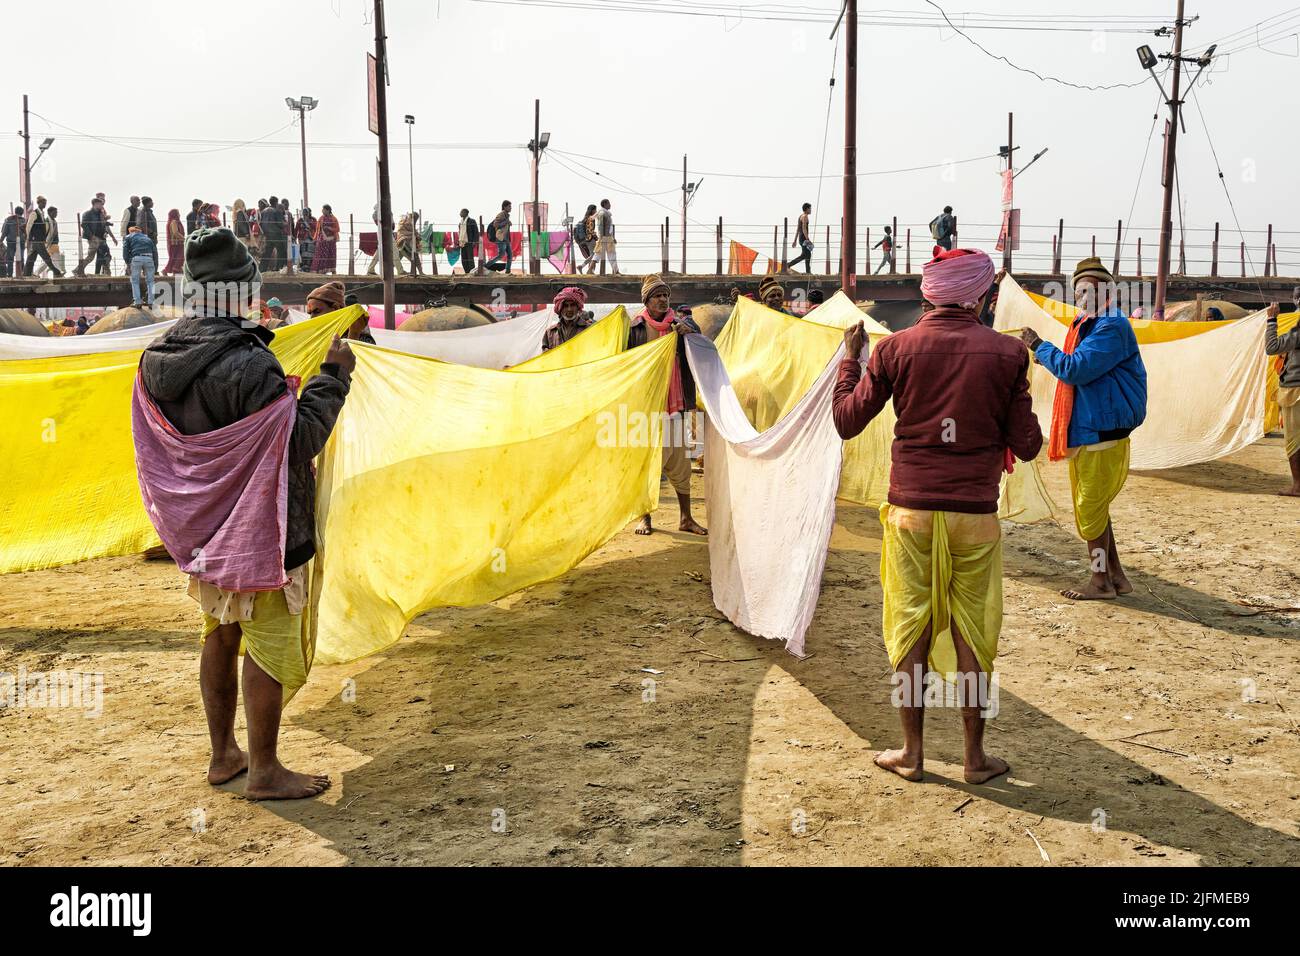 Los peregrinos estirando el lavado al seco, Allahabad Kumbh Mela, la reunión religiosa más grande del mundo, Uttar Pradesh, India Foto de stock